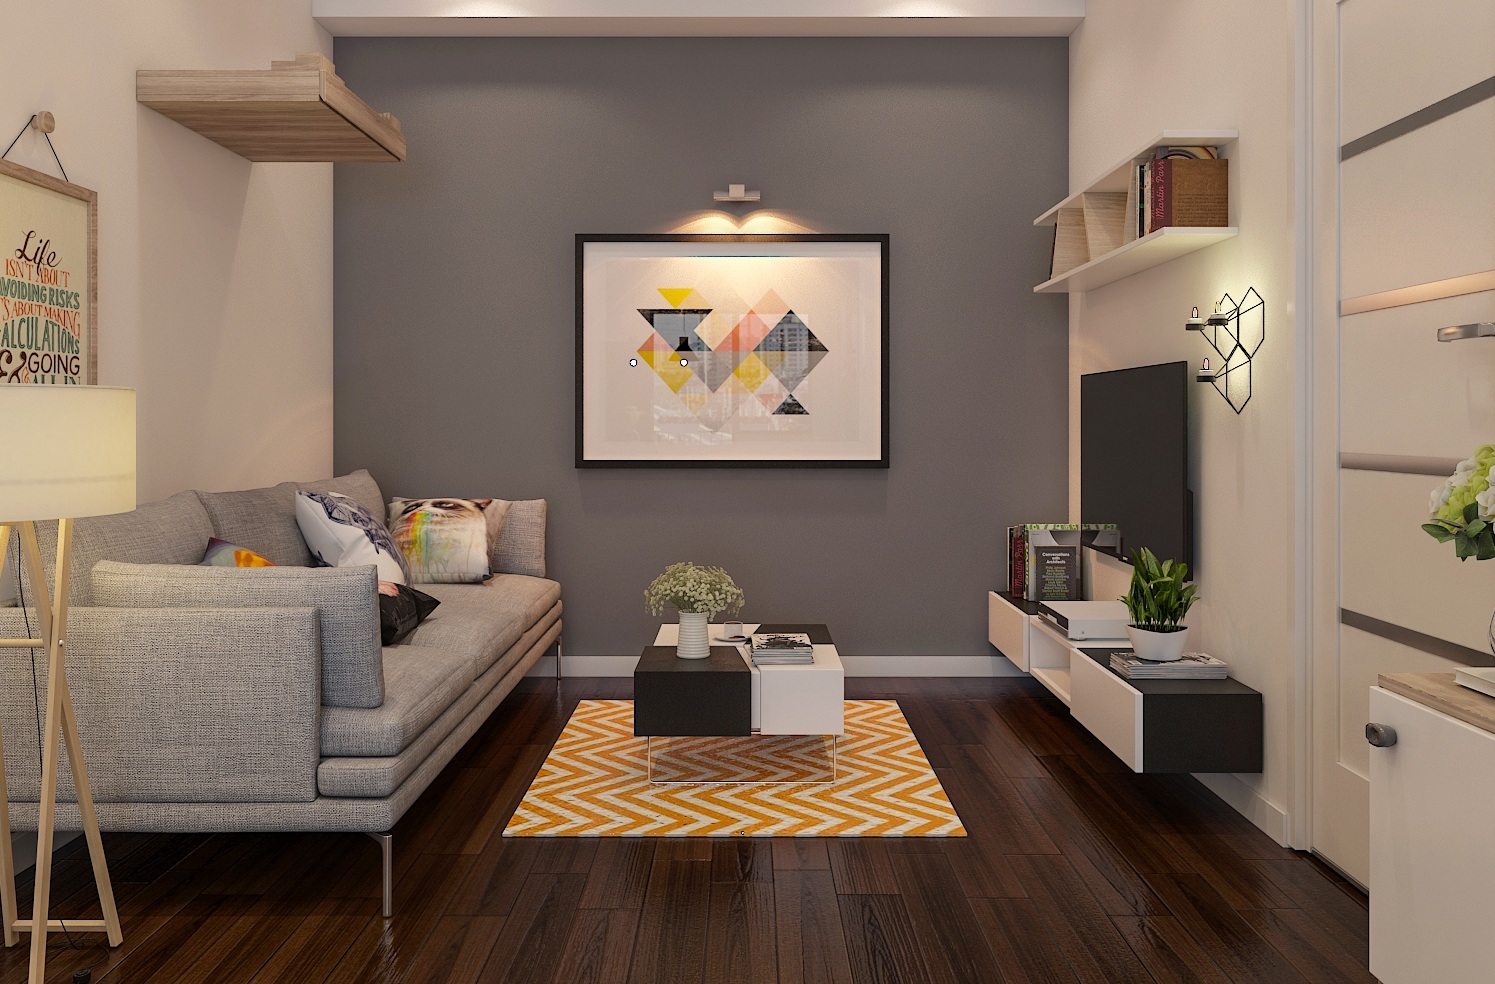 Hình ảnh cho mẫu sofa phòng khách nhỏ với phong cách thiết kế hiện đại